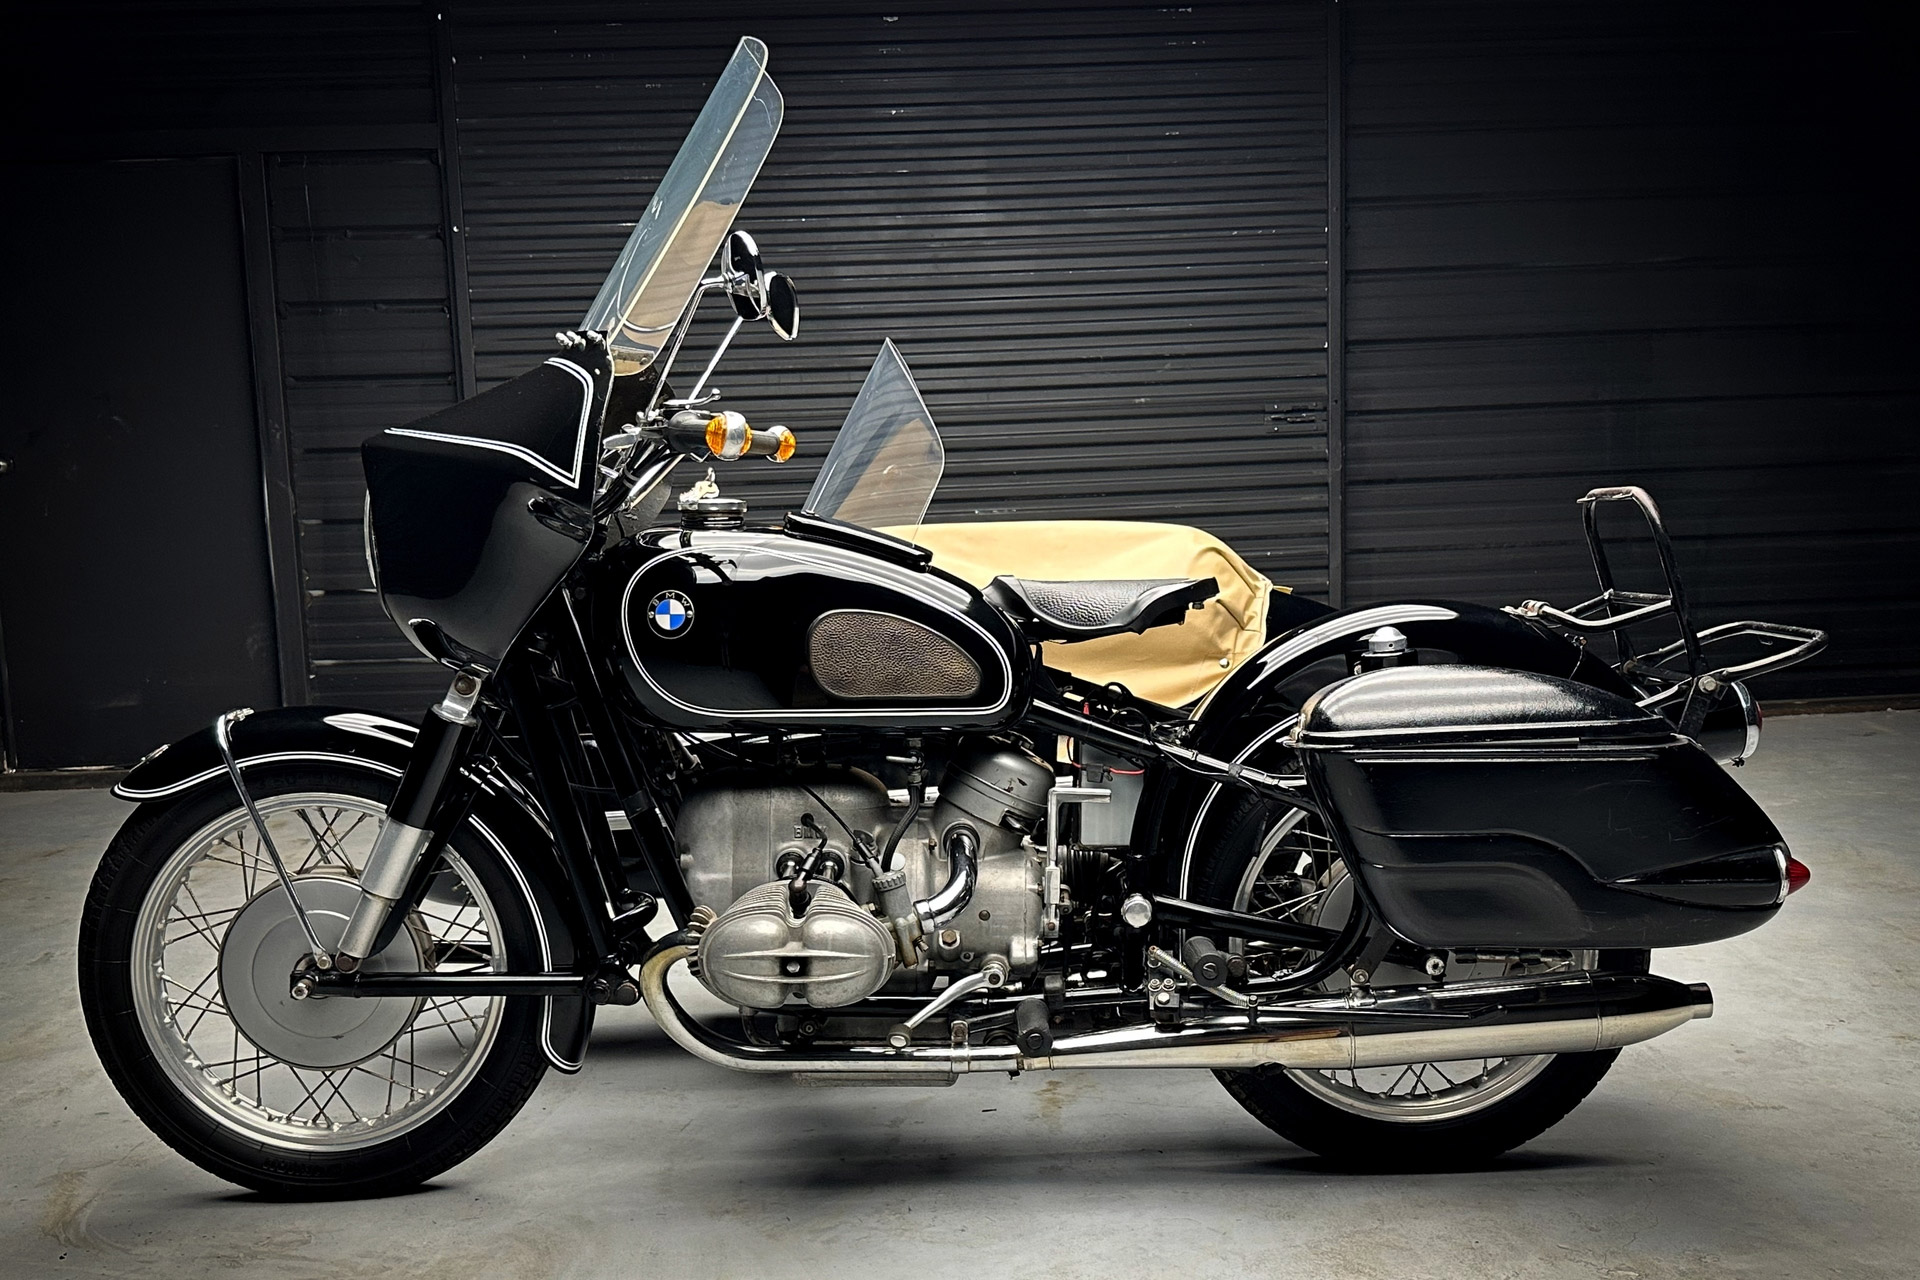 Мотоцикл BMW R69 1960 года выпуска